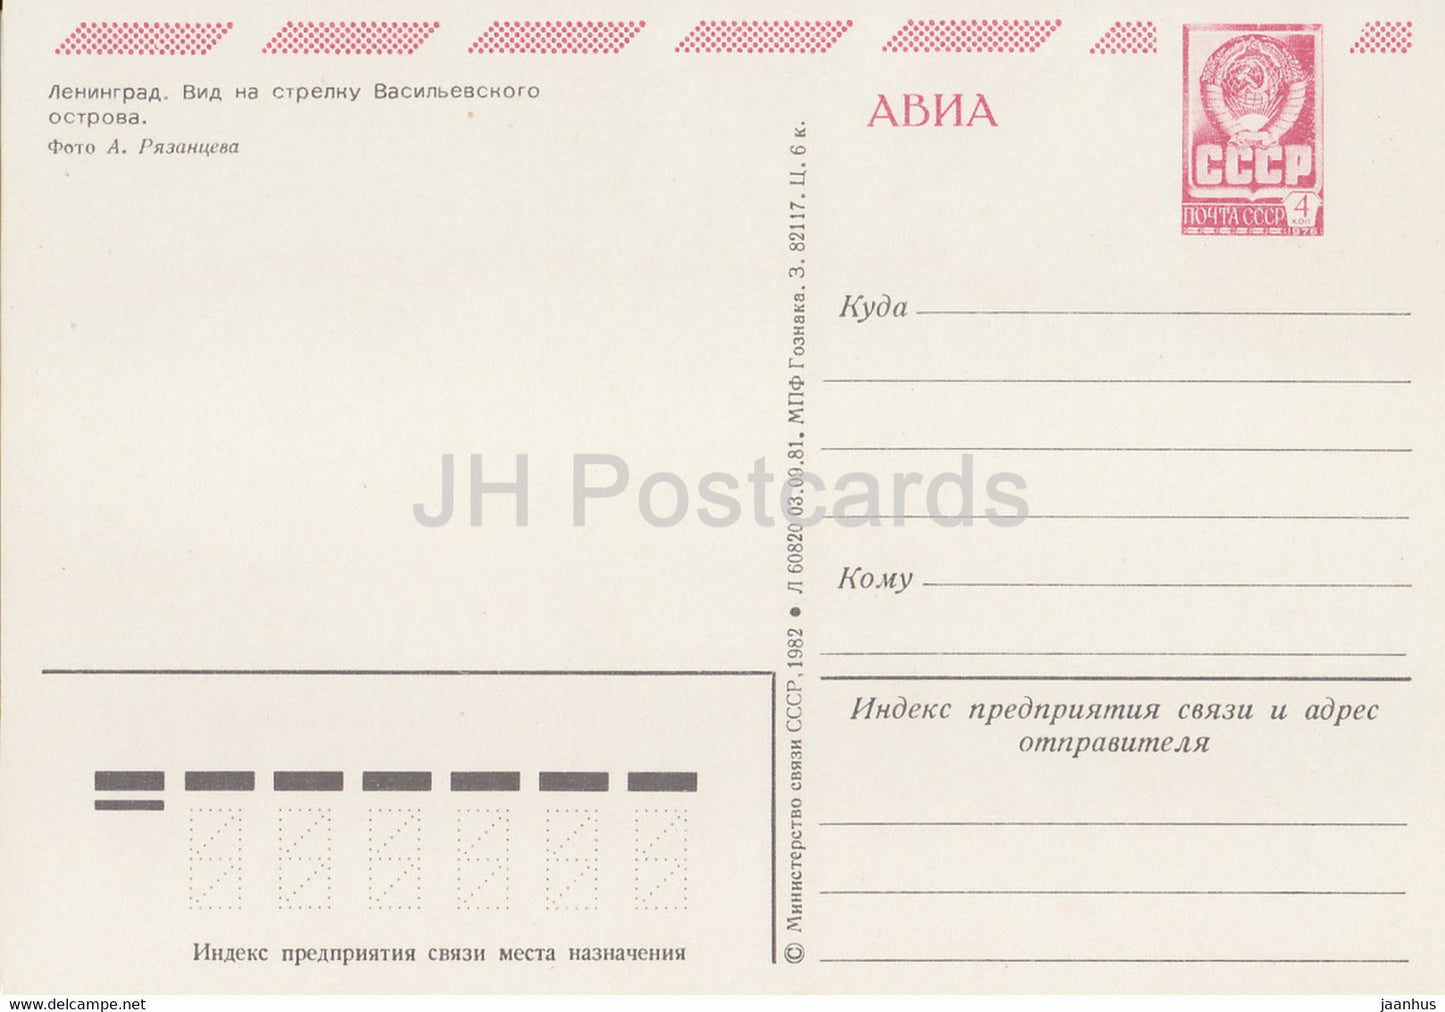 Leningrad - St Petersburg - spit of Vasilievsky Island - ship Raketa - postal stationery - 1982 - Russia USSR - unused